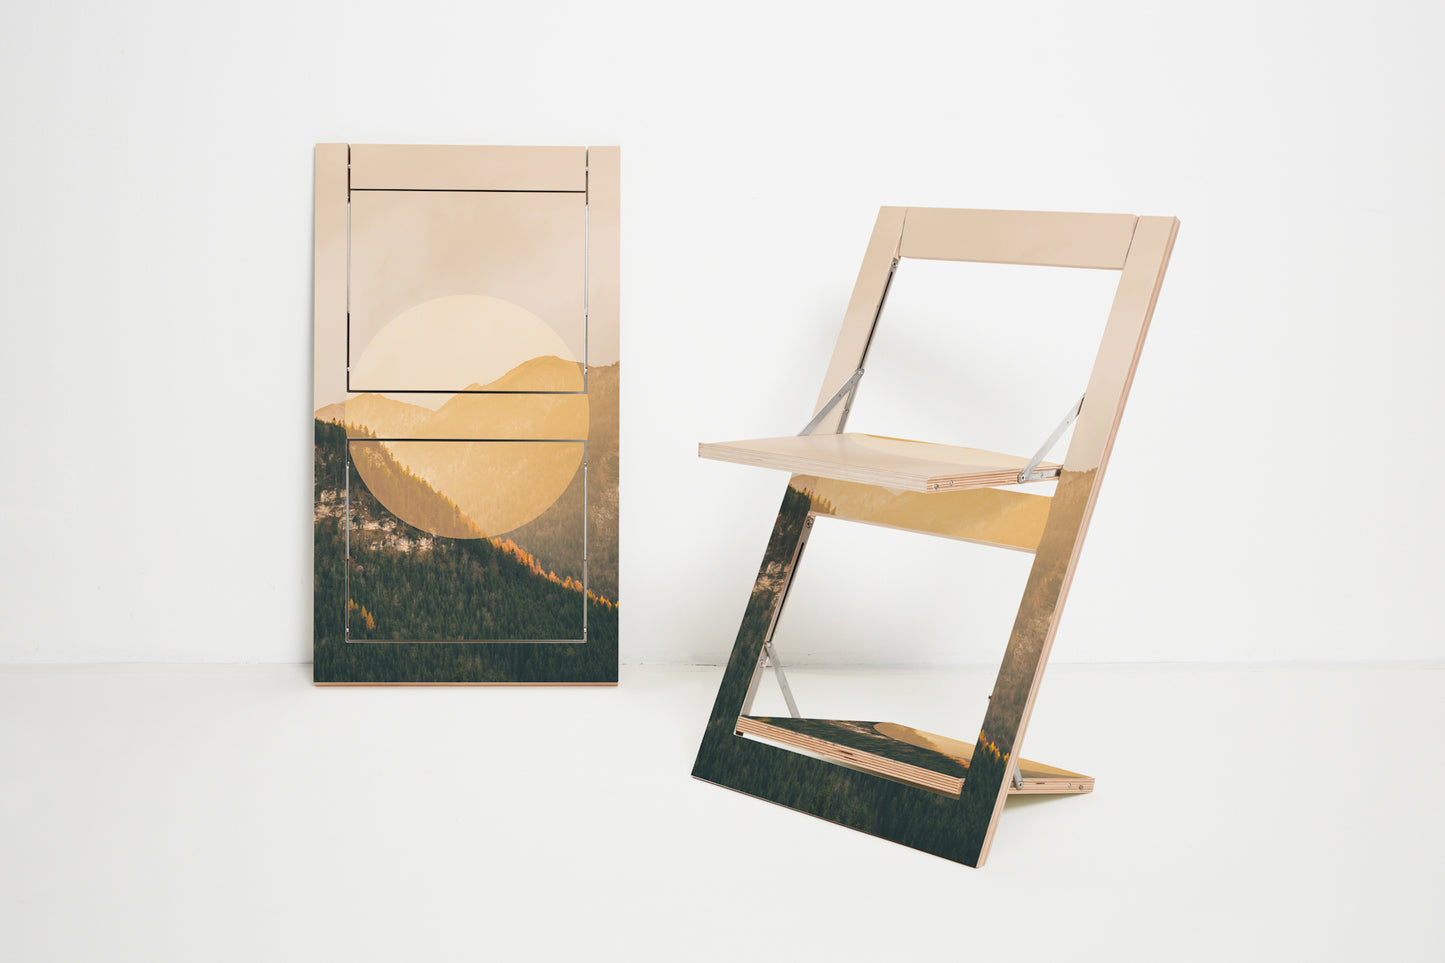 Fläpps Folding Chair – Alps